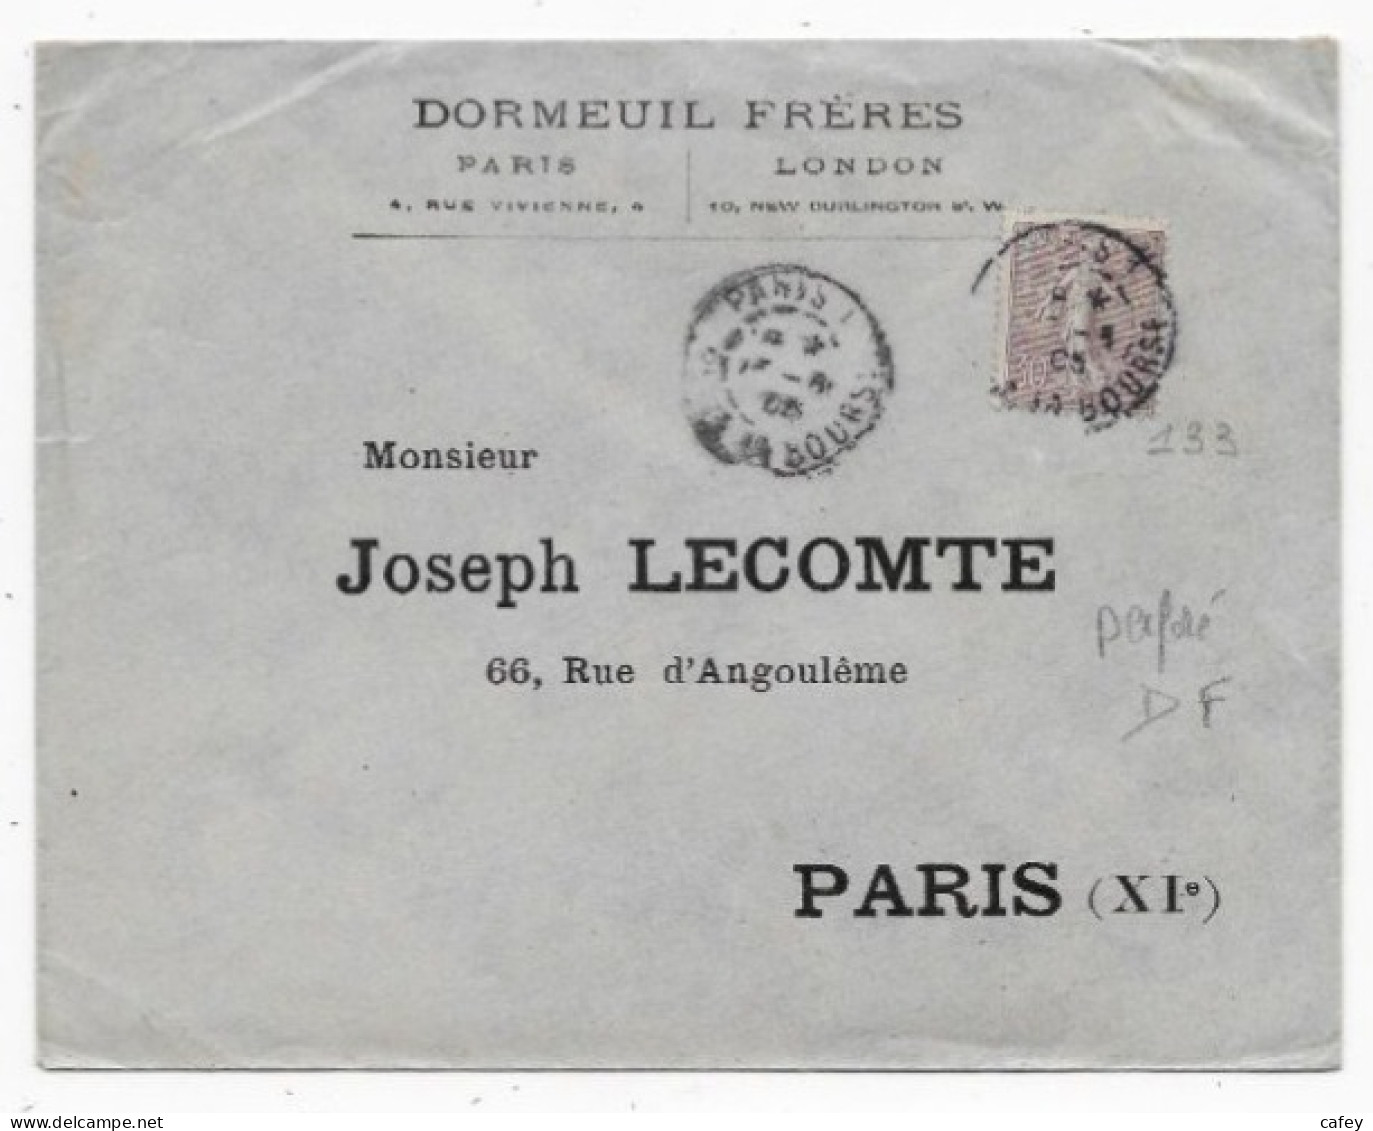 Lettre De PARIS P/ PARIS 1905 Timbre 30c SEMEUSE LIGNEE Perforé DF Entête DORMEUIL FRERES Voir Tarif - 1877-1920: Periodo Semi Moderno